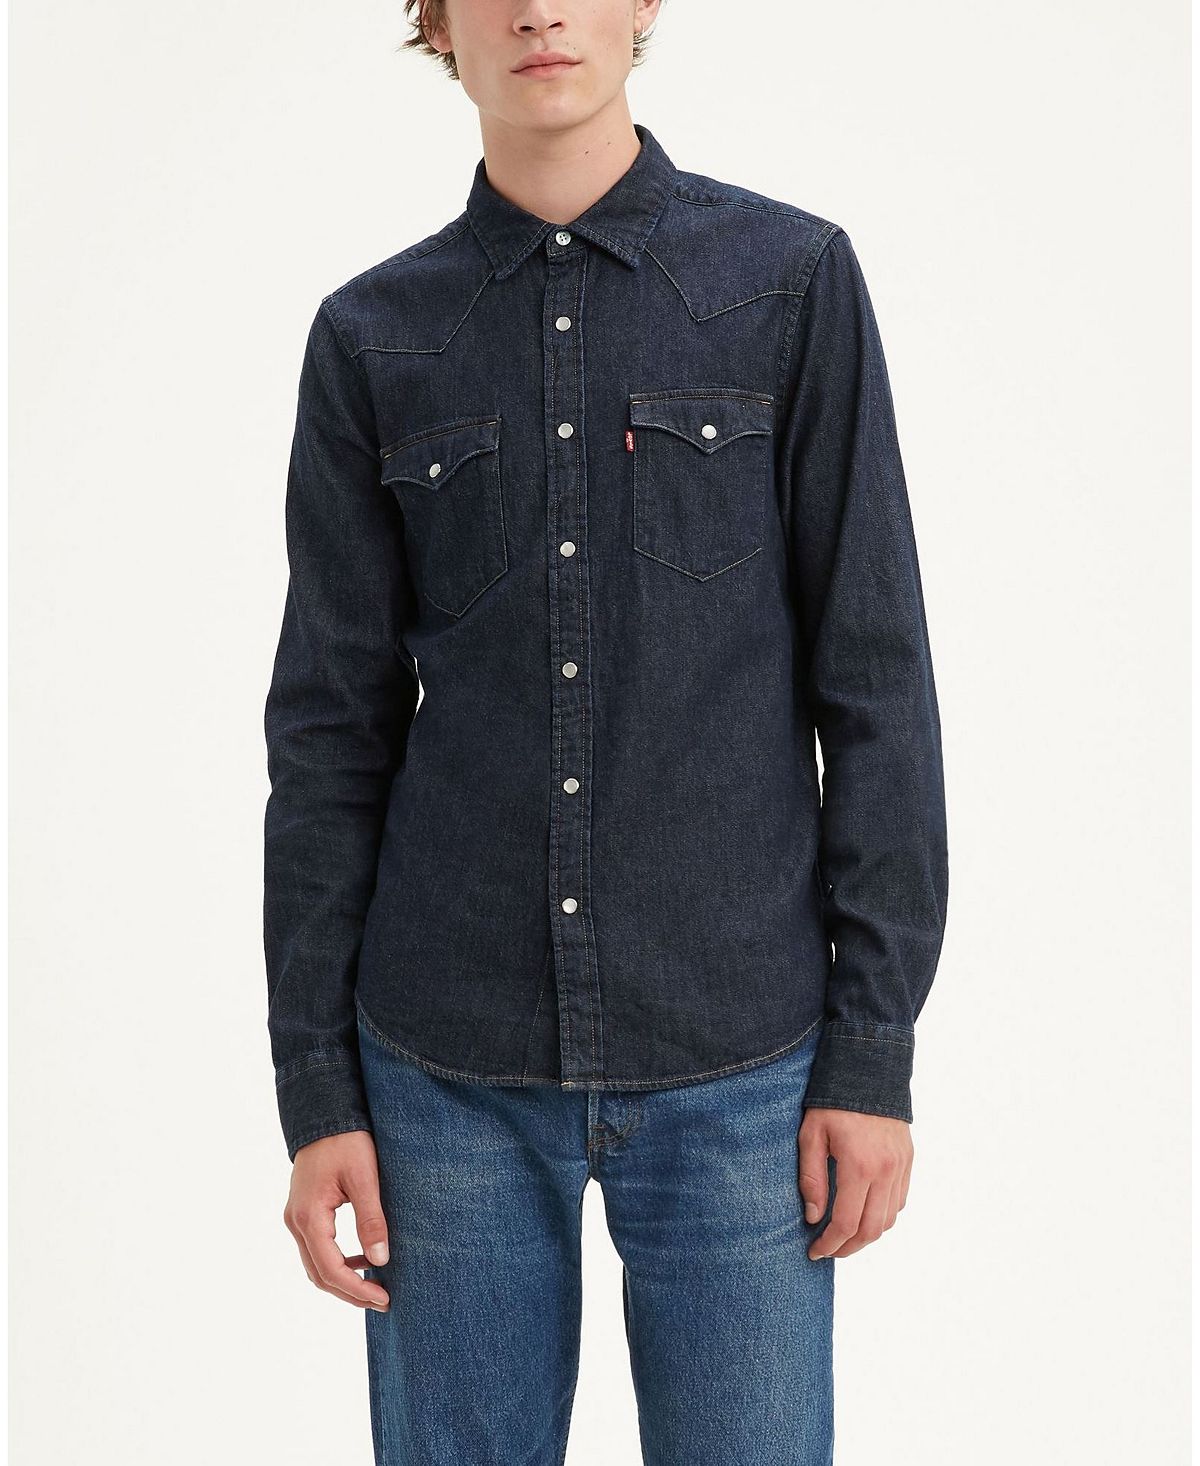 Мужская классическая чистая джинсовая рубашка стандартного кроя в стиле вестерн Levi's, мульти